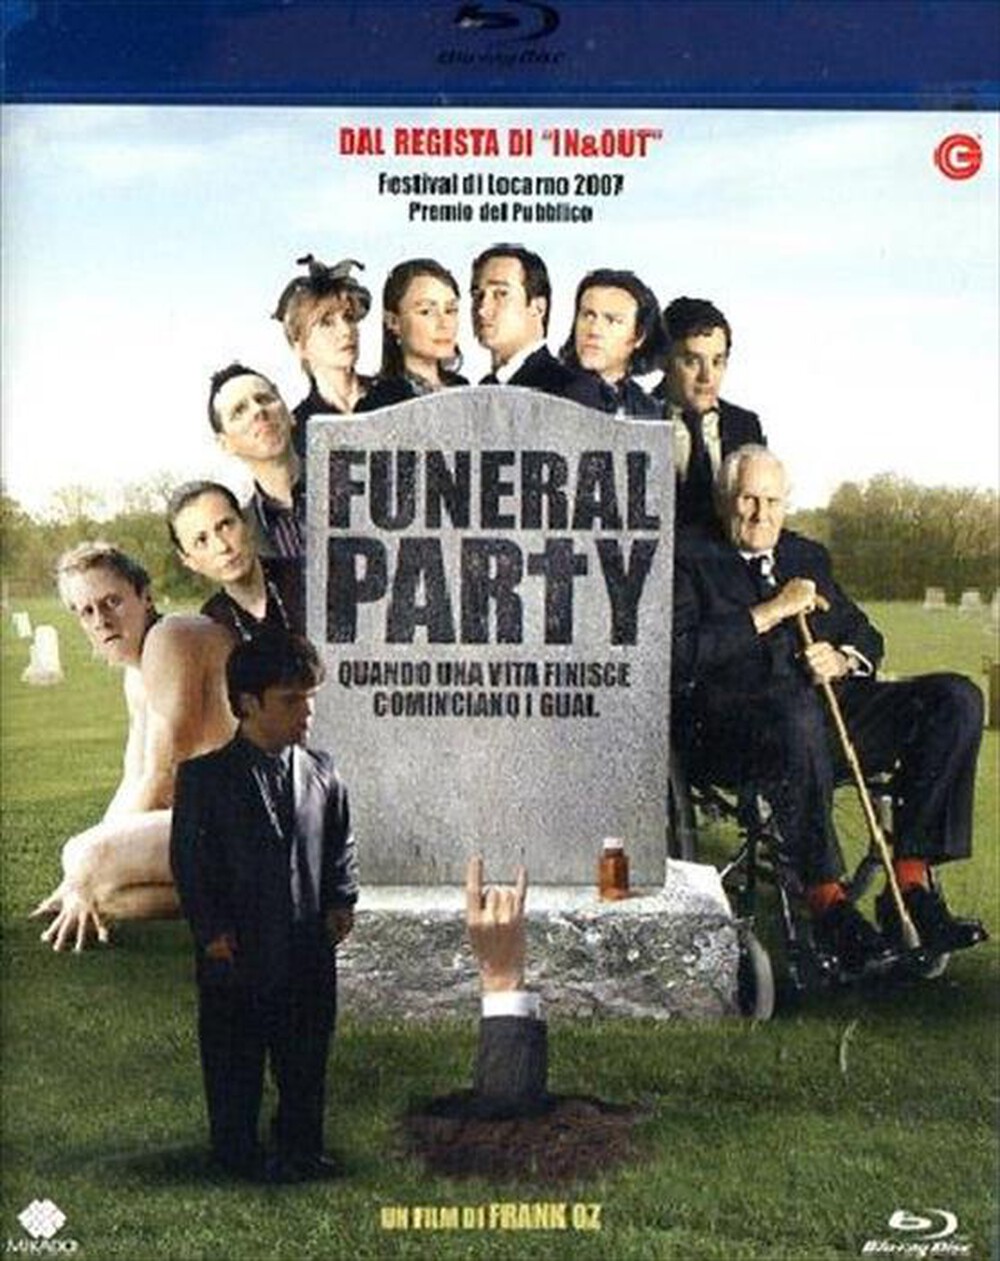 "CECCHI GORI - Funeral Party"